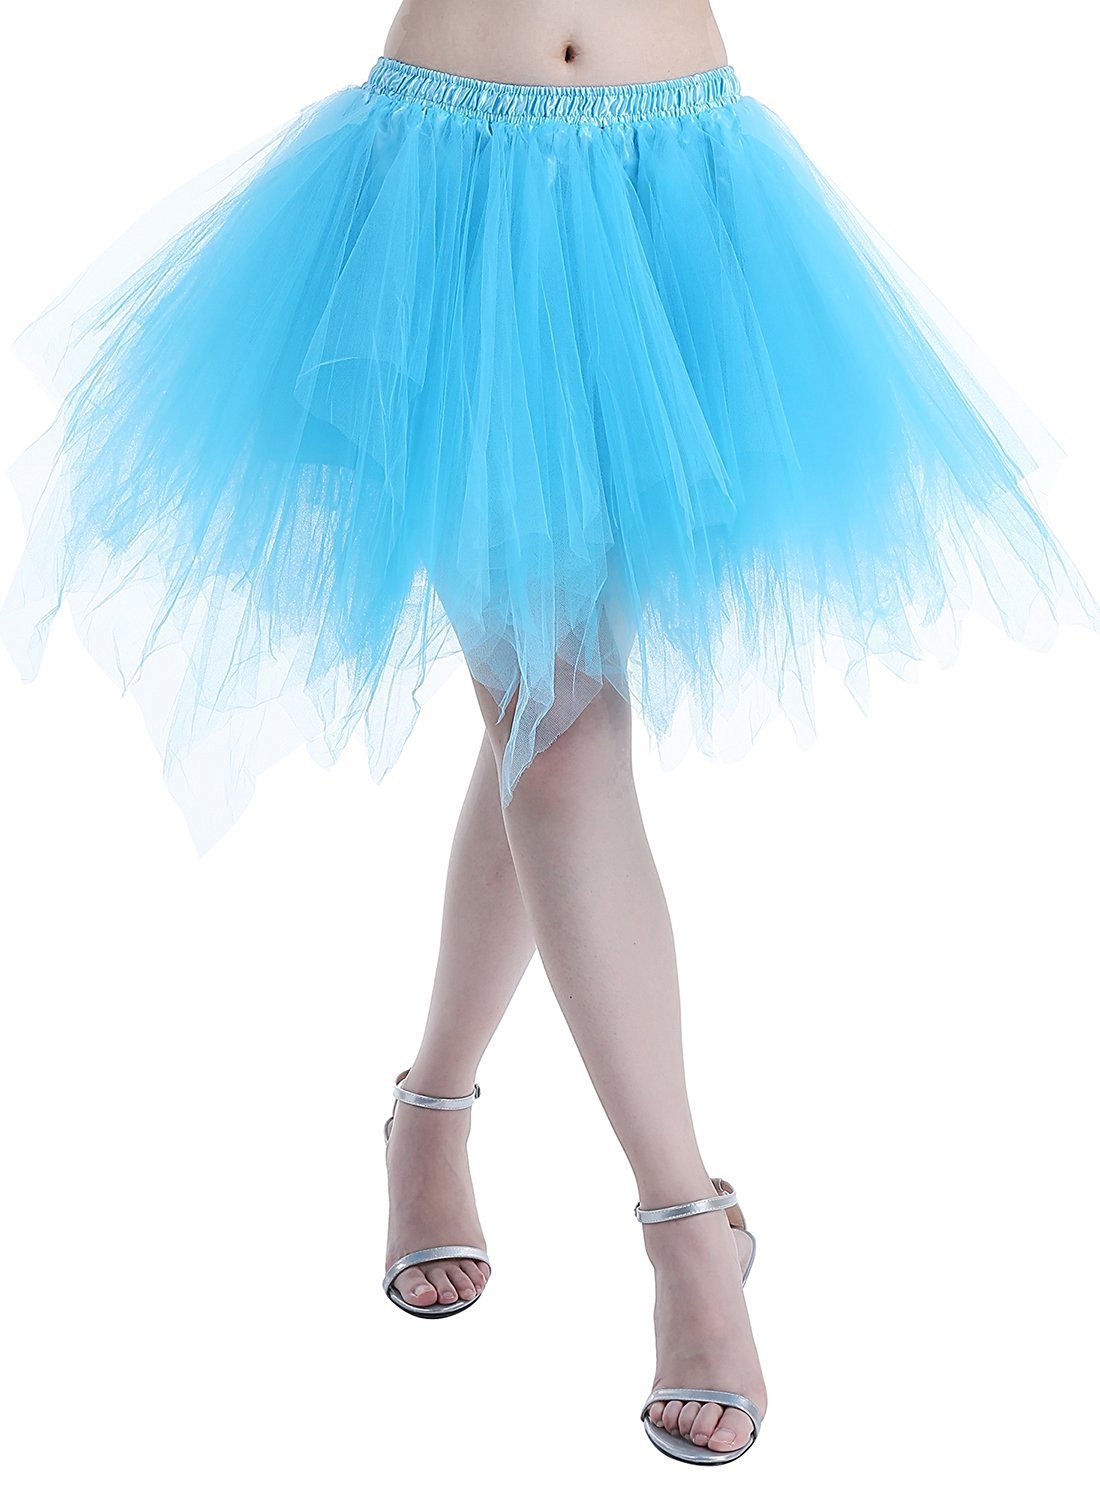 Karneval Erwachsene Damen 80's Tüllrock Tütü Röcke Tüll Petticoat Tutu Blau